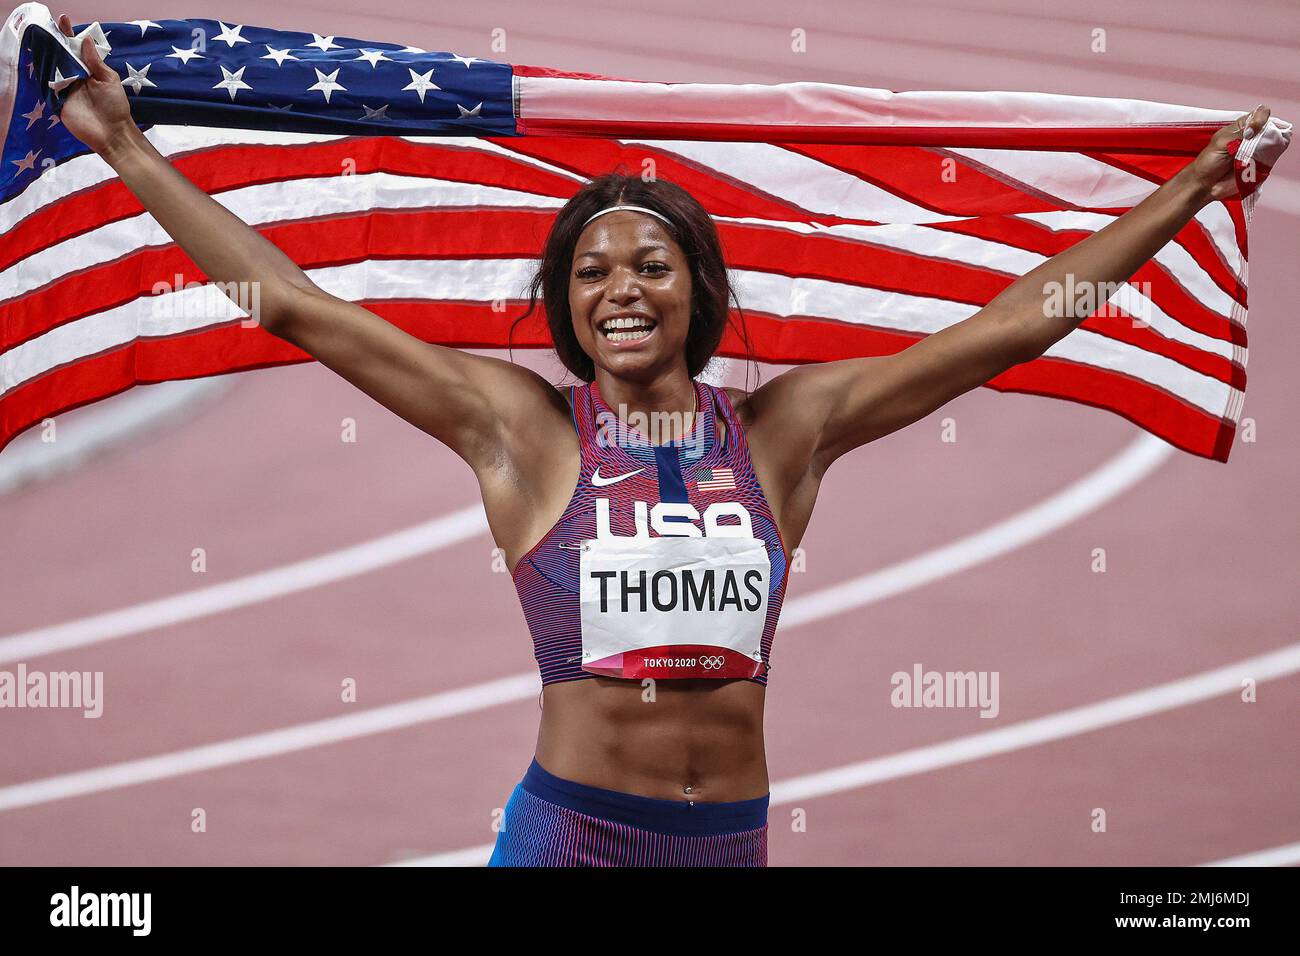 Gabrielle Thomas (USA) médaillée d'argent dans les 200 mètres féminins aux Jeux Olympiques d'été de 2020 (2021), Tokyo, Japon Banque D'Images